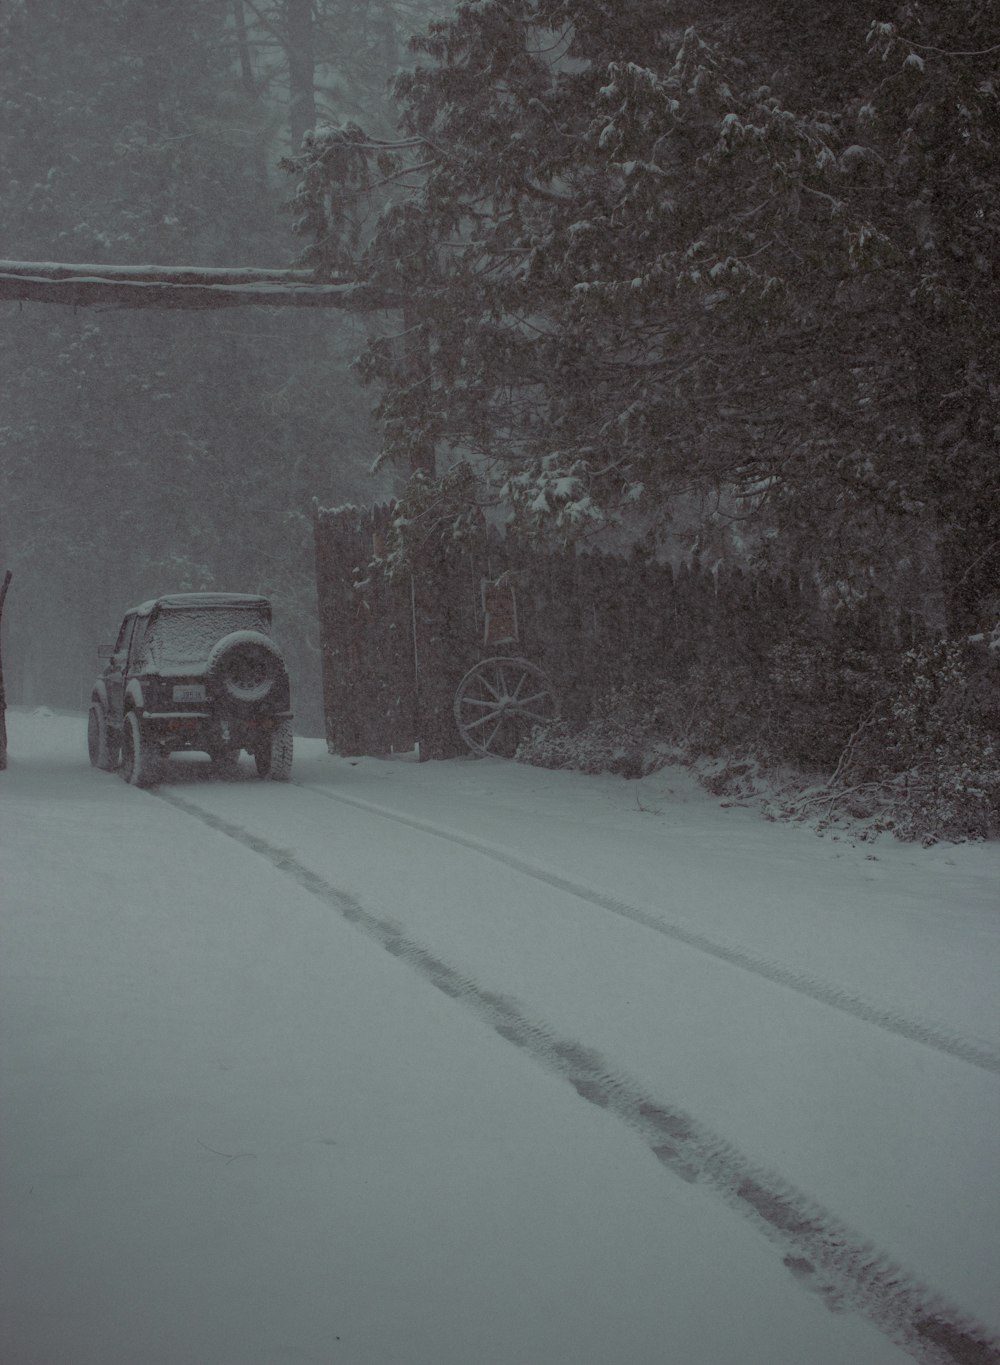 Un camión conduciendo por una carretera cubierta de nieve